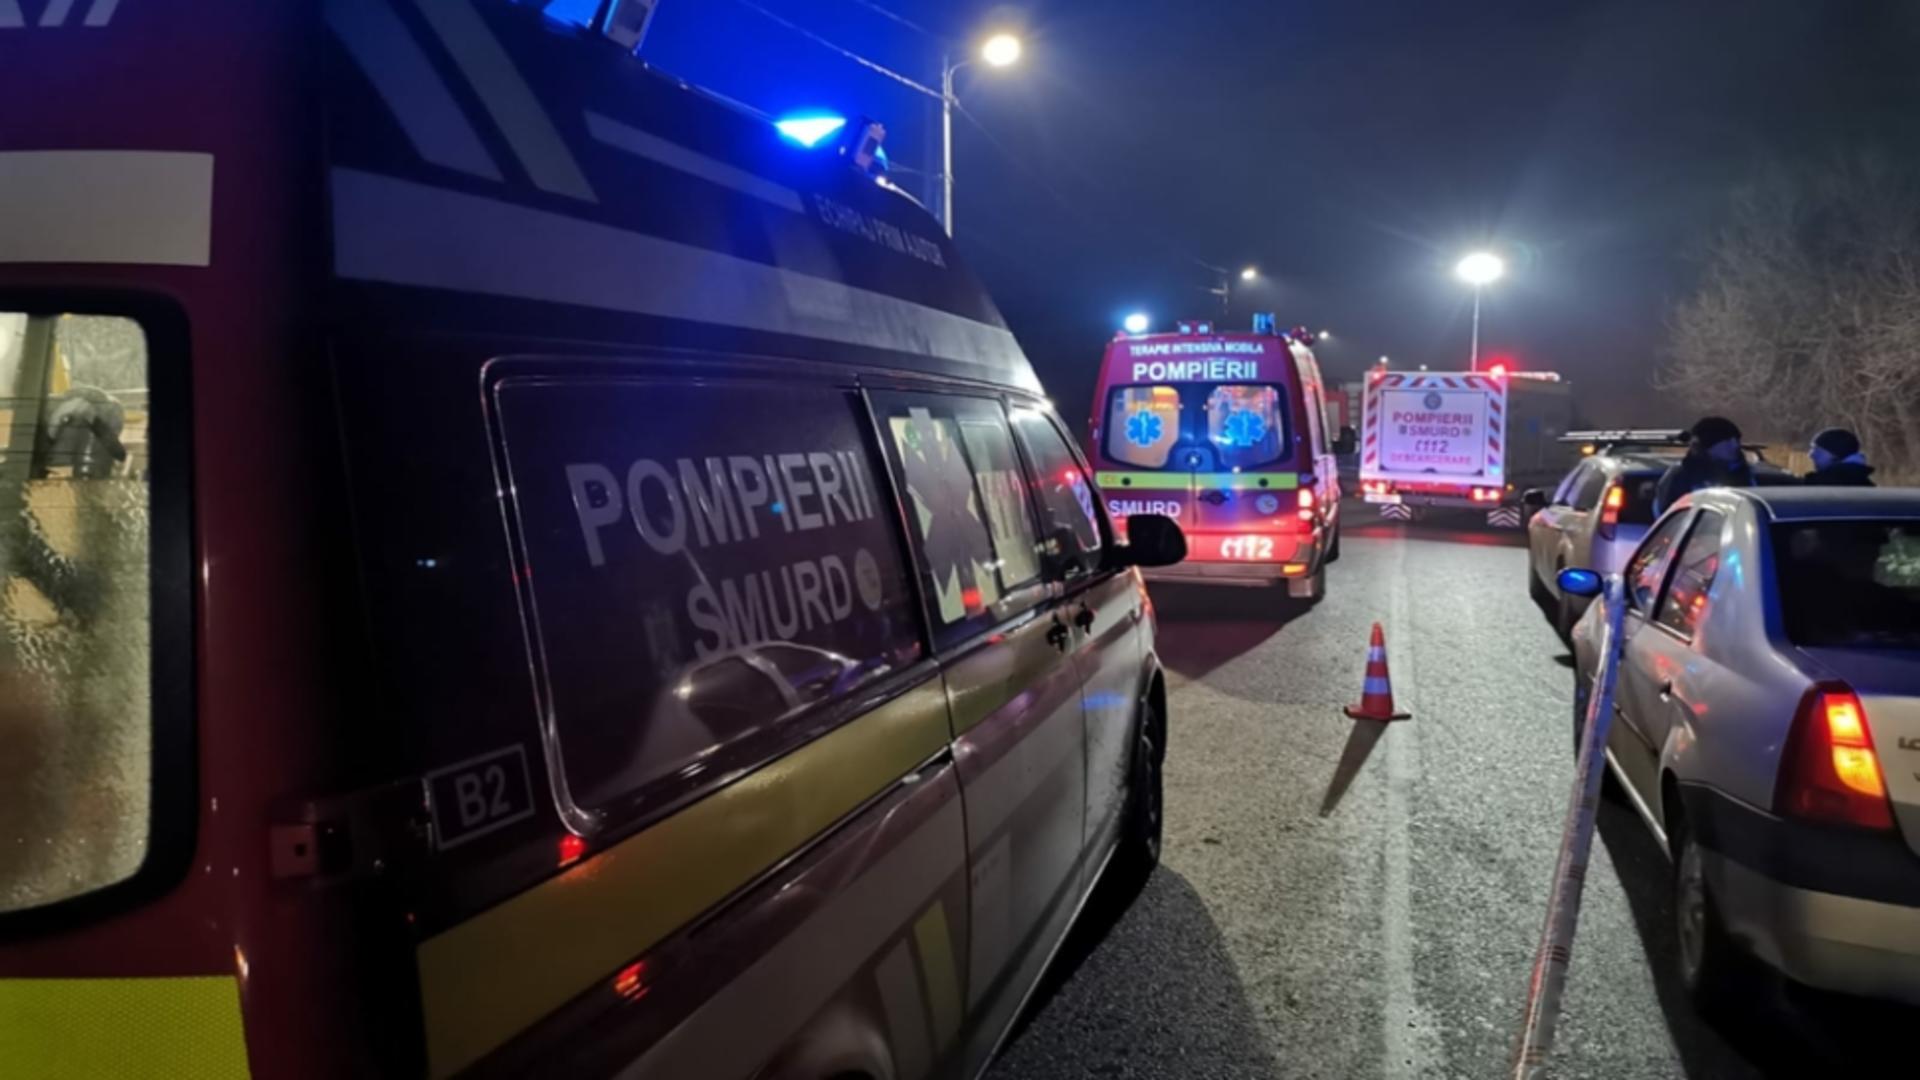 IMPACT VIOLENT între un microbuz și o autoutilitară, în județul Constanța. O persoană a murit